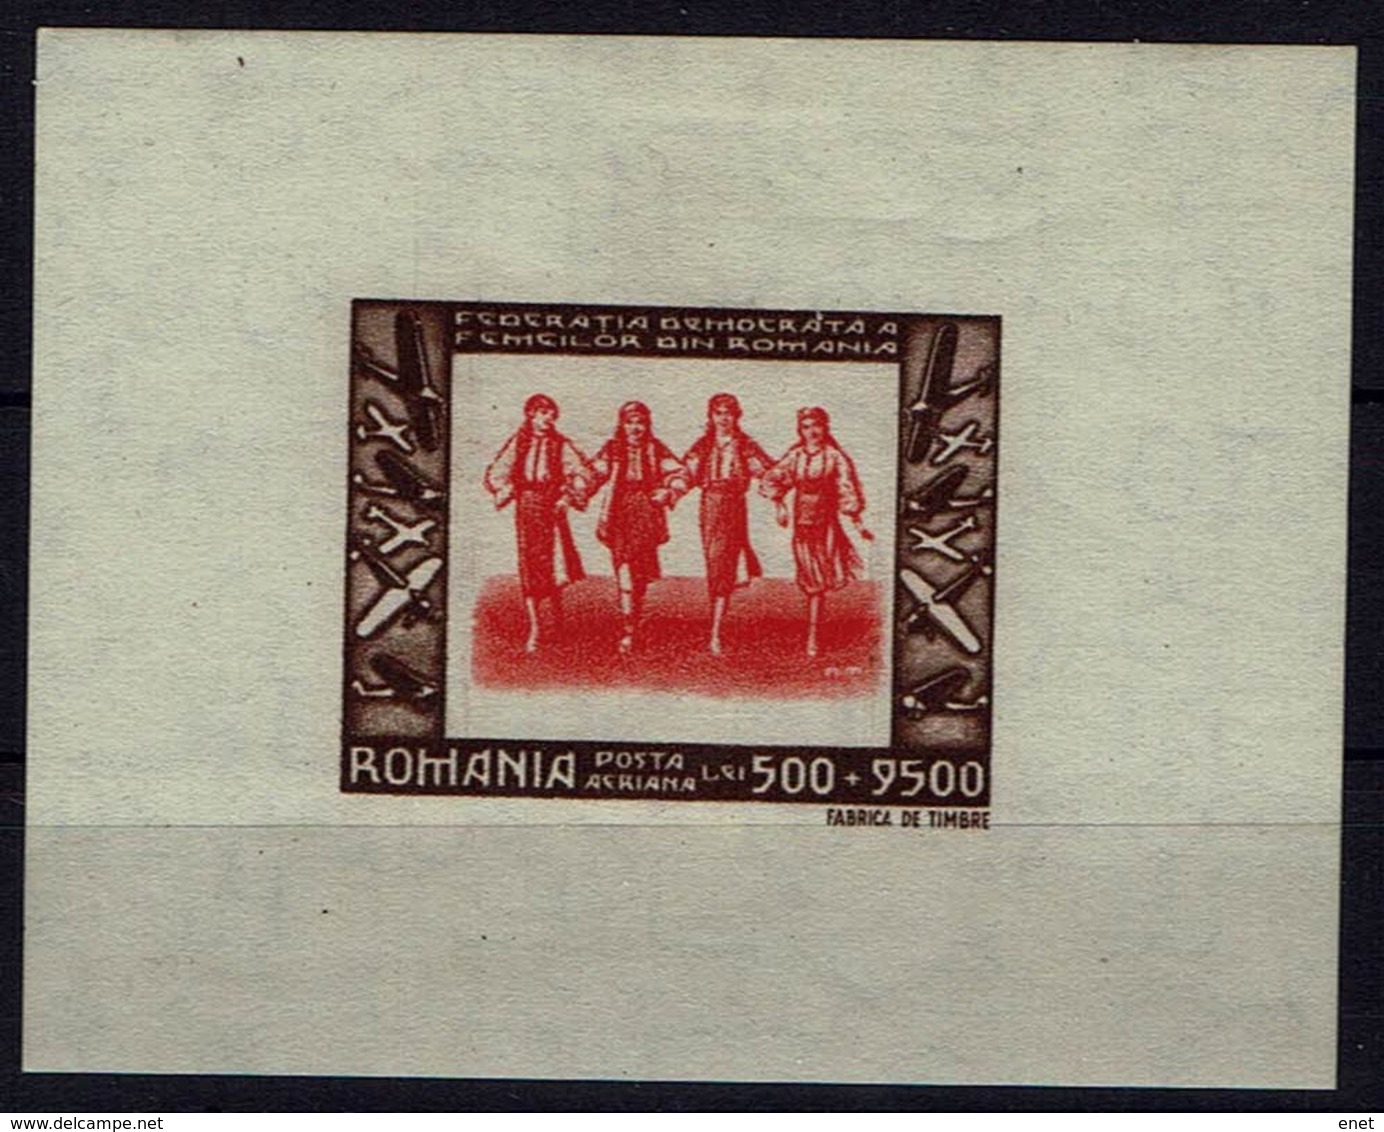 Rumänien Romana 1946 - Trachten - Mädchentanzgruppe - MiNr Block 35 (1018) - Kostüme